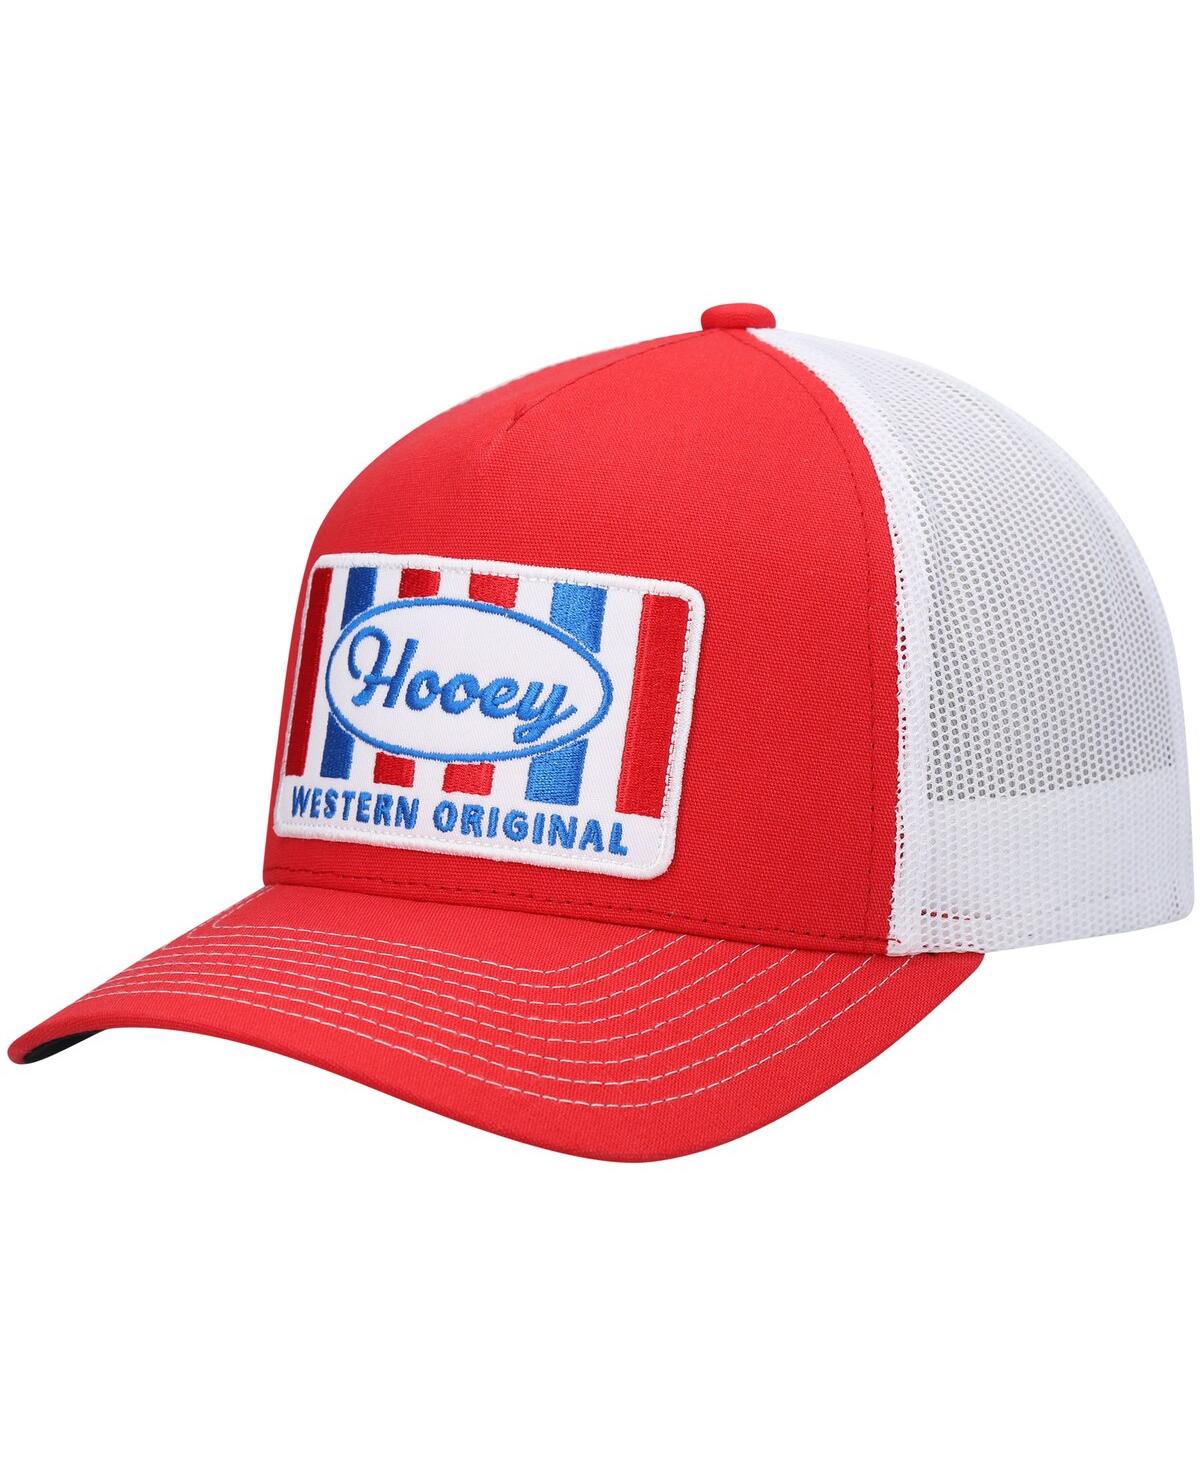 Men's Hooey Red, White Sudan Trucker Snapback Hat - Red, White